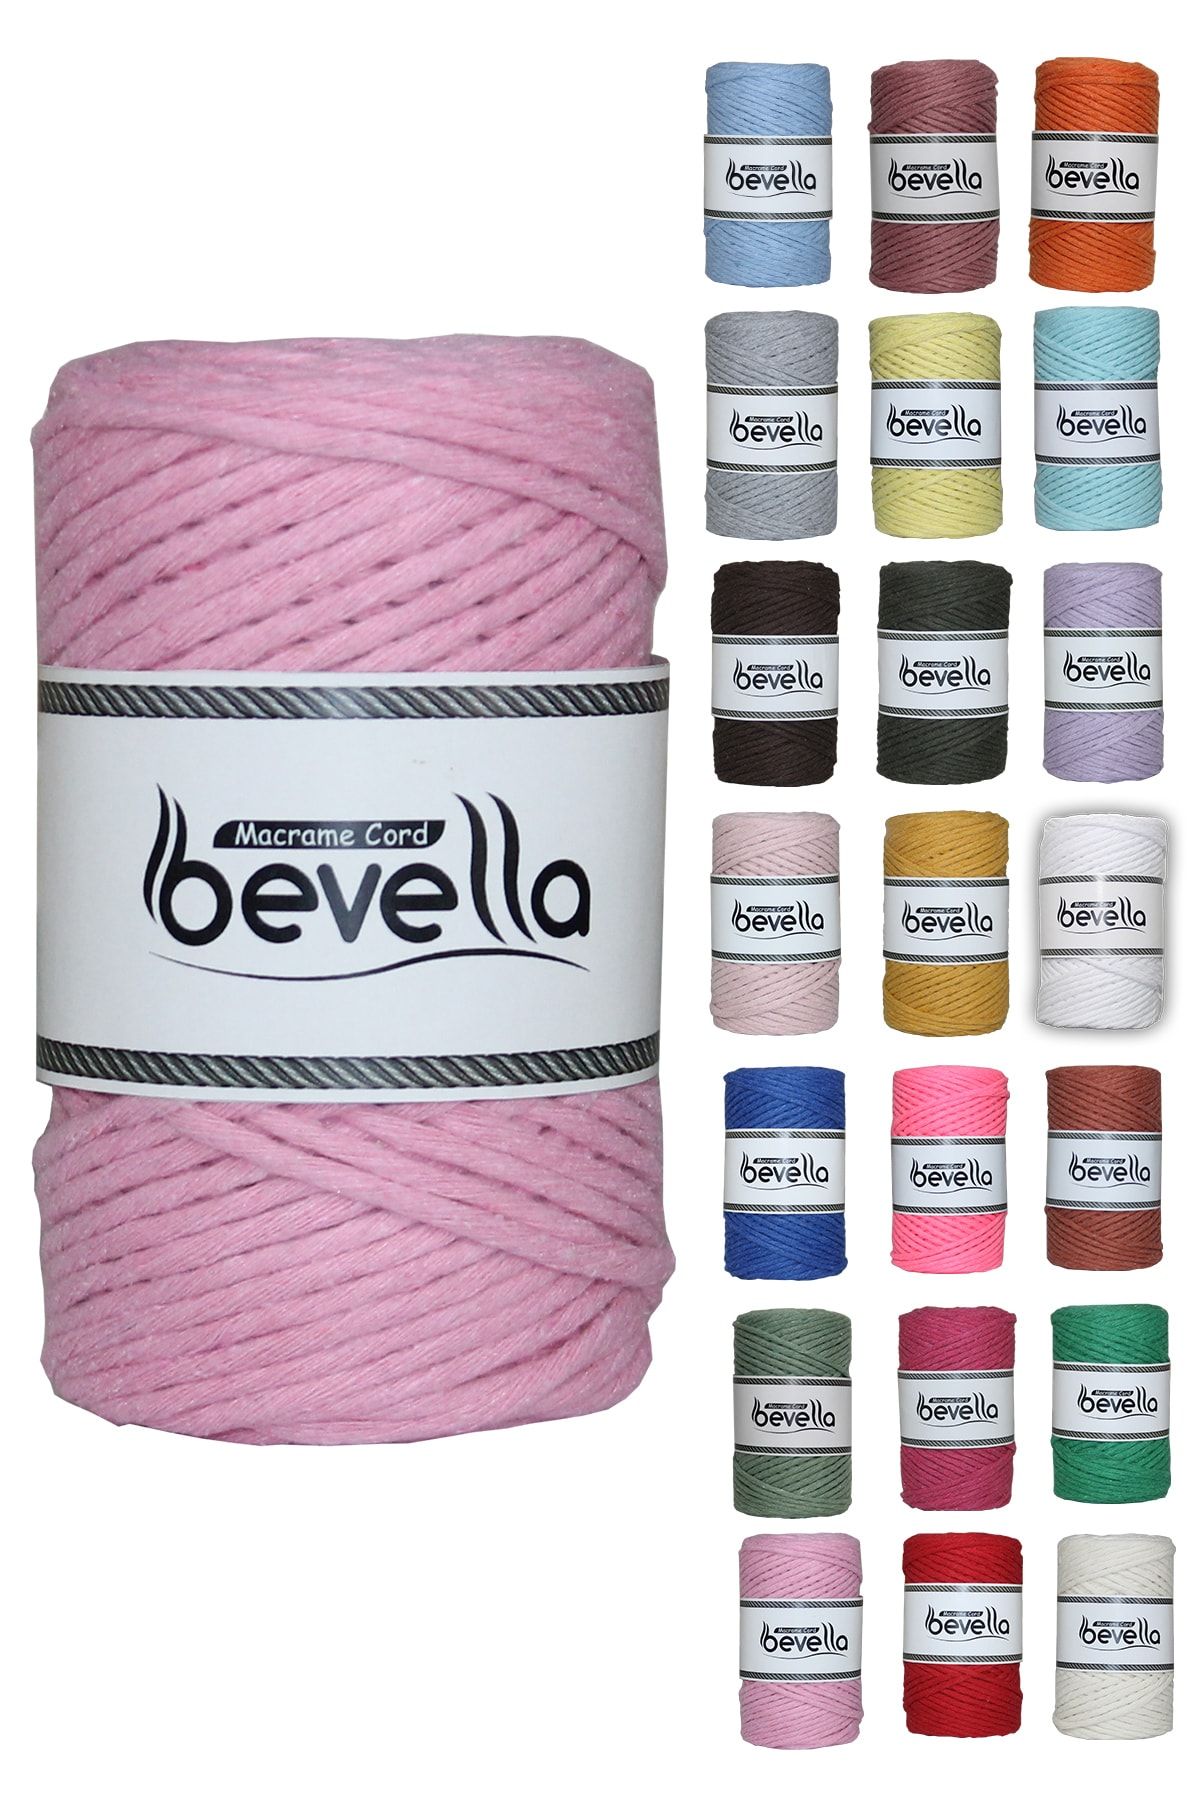 Bevella Macrame Cord Knitting Rope - Pink - Polyamide - Trendyol